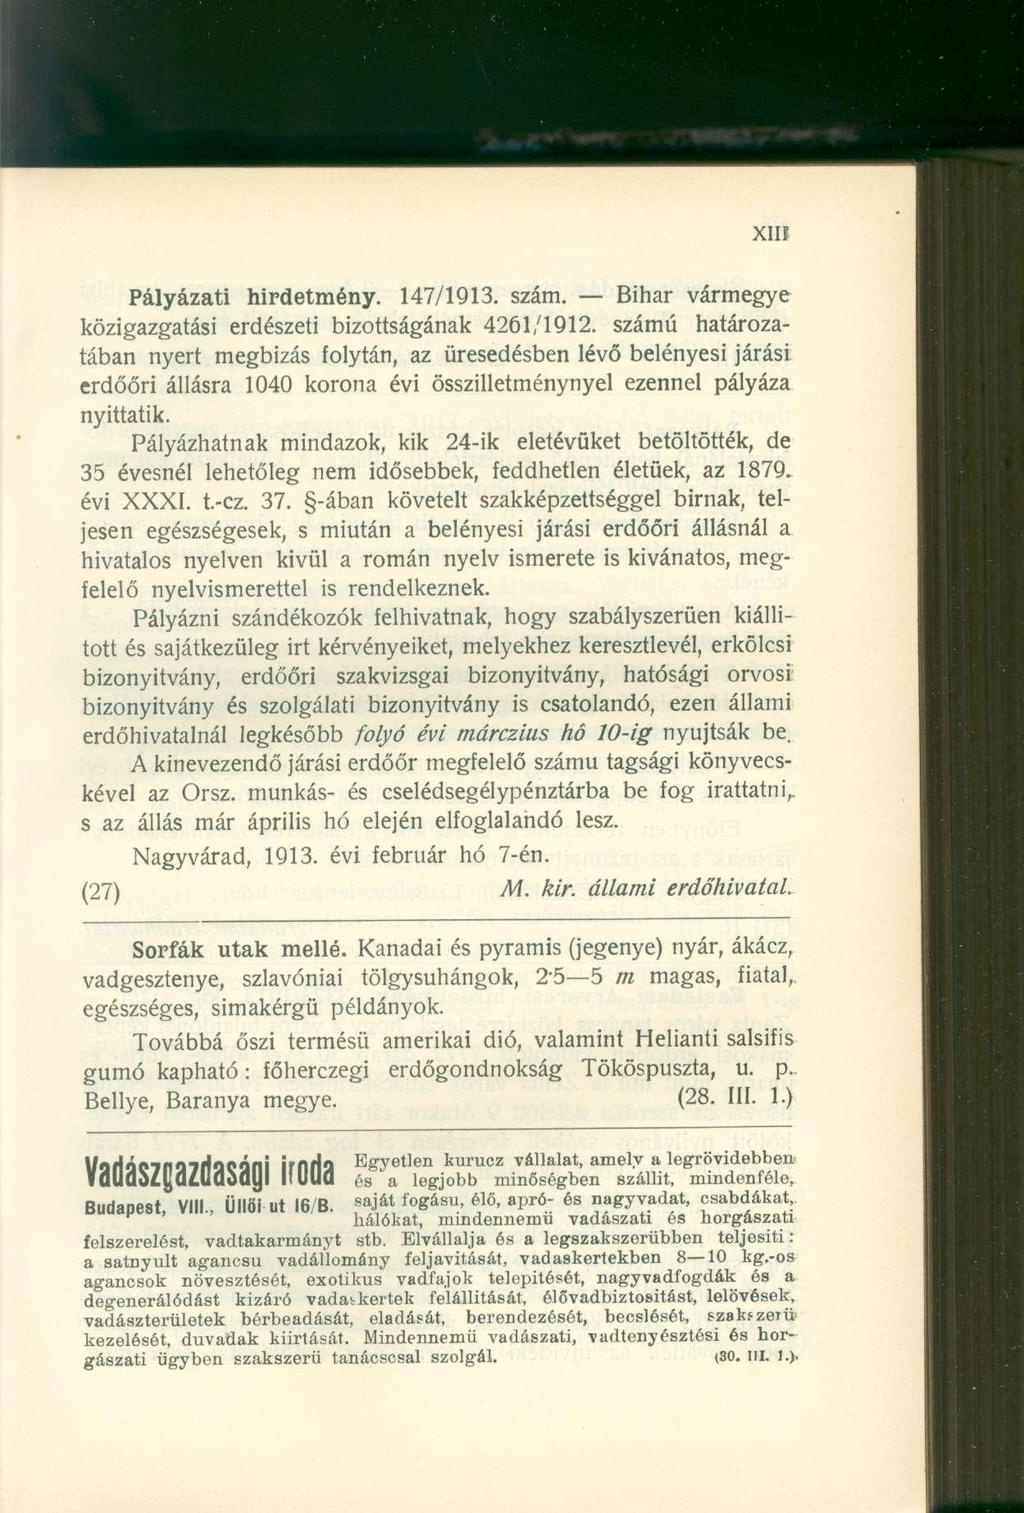 Xllf Pályázati hirdetmény. 147/1913. szám. Bihar vármegye közigazgatási erdészeti bizottságának 4261/1912.